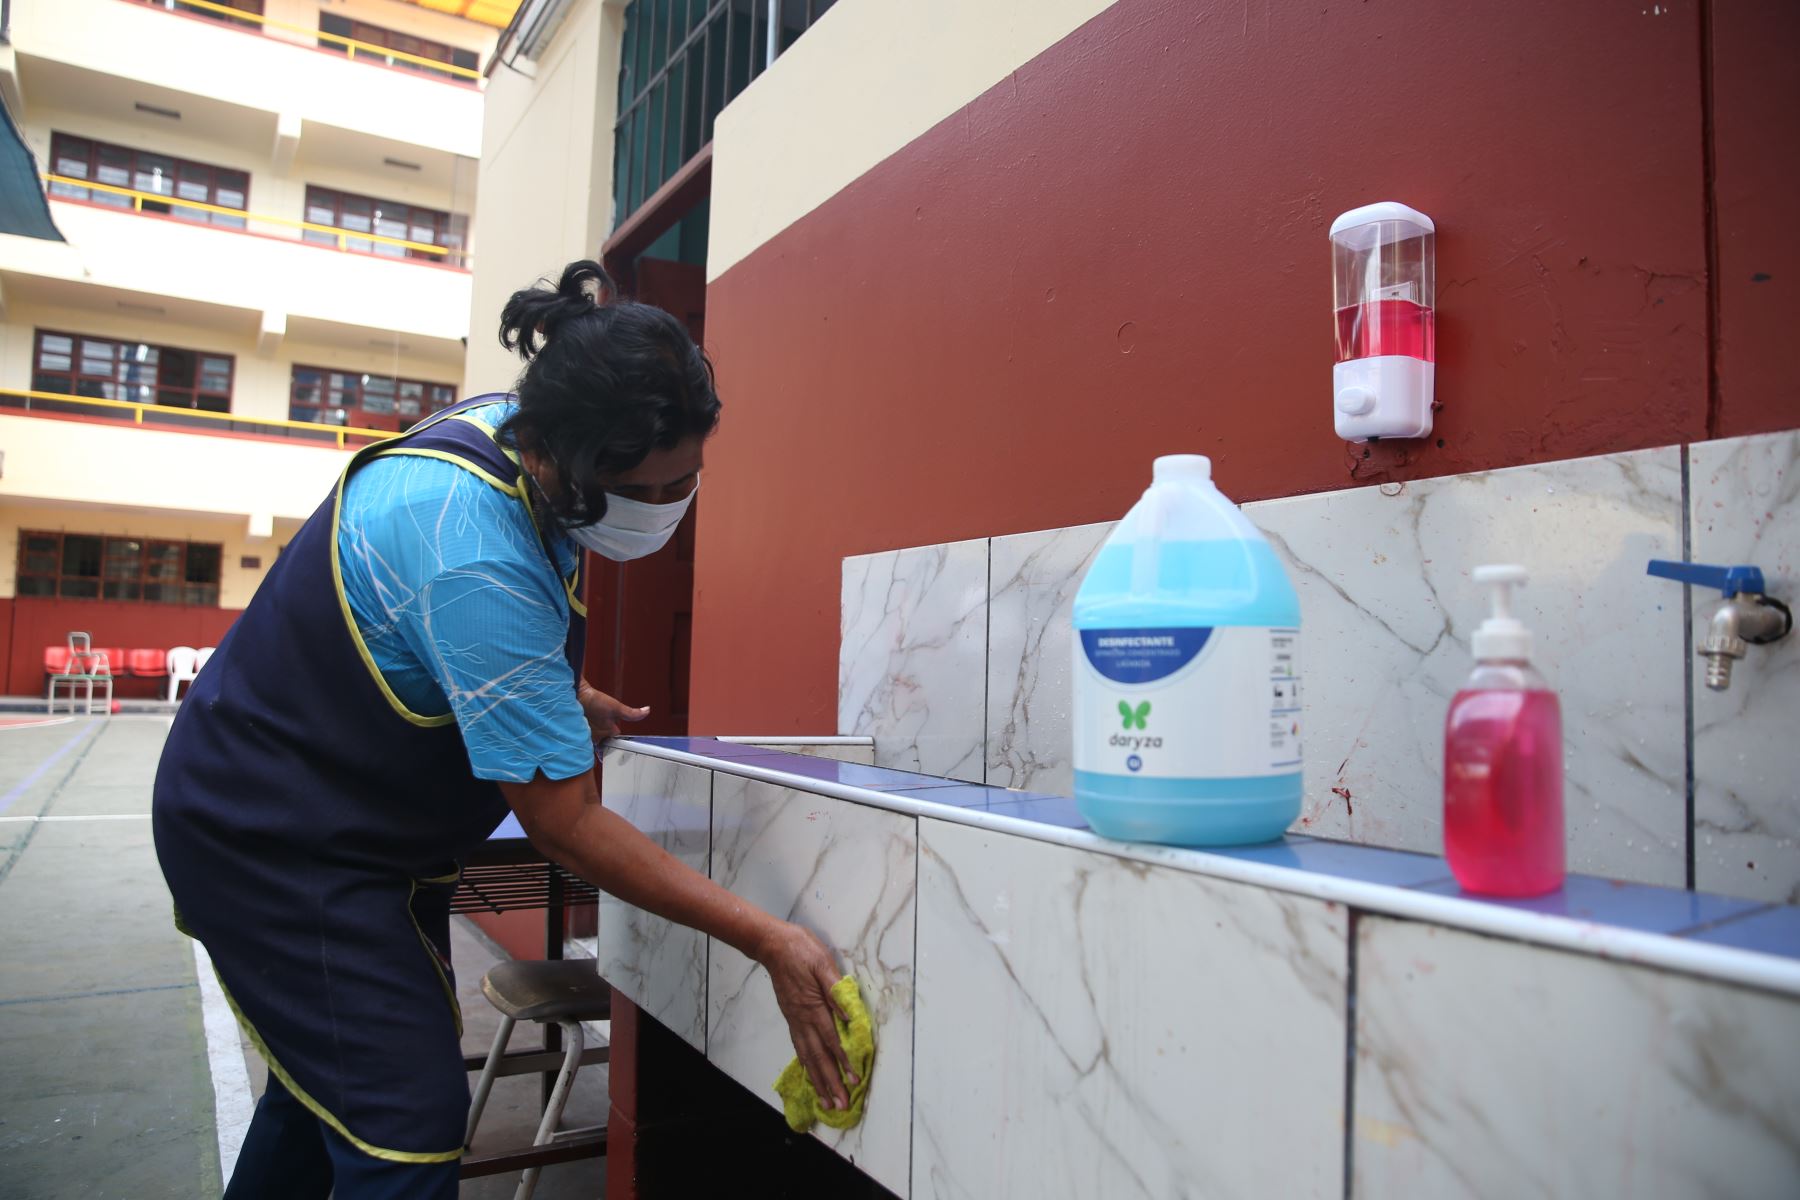 Colegios públicos deben contar con un kit básico de aseo en sus servicios higiénicos para prevenir presencia de coronavirus Cov 2019. ANDINA/Jhonel Rodríguez Robles